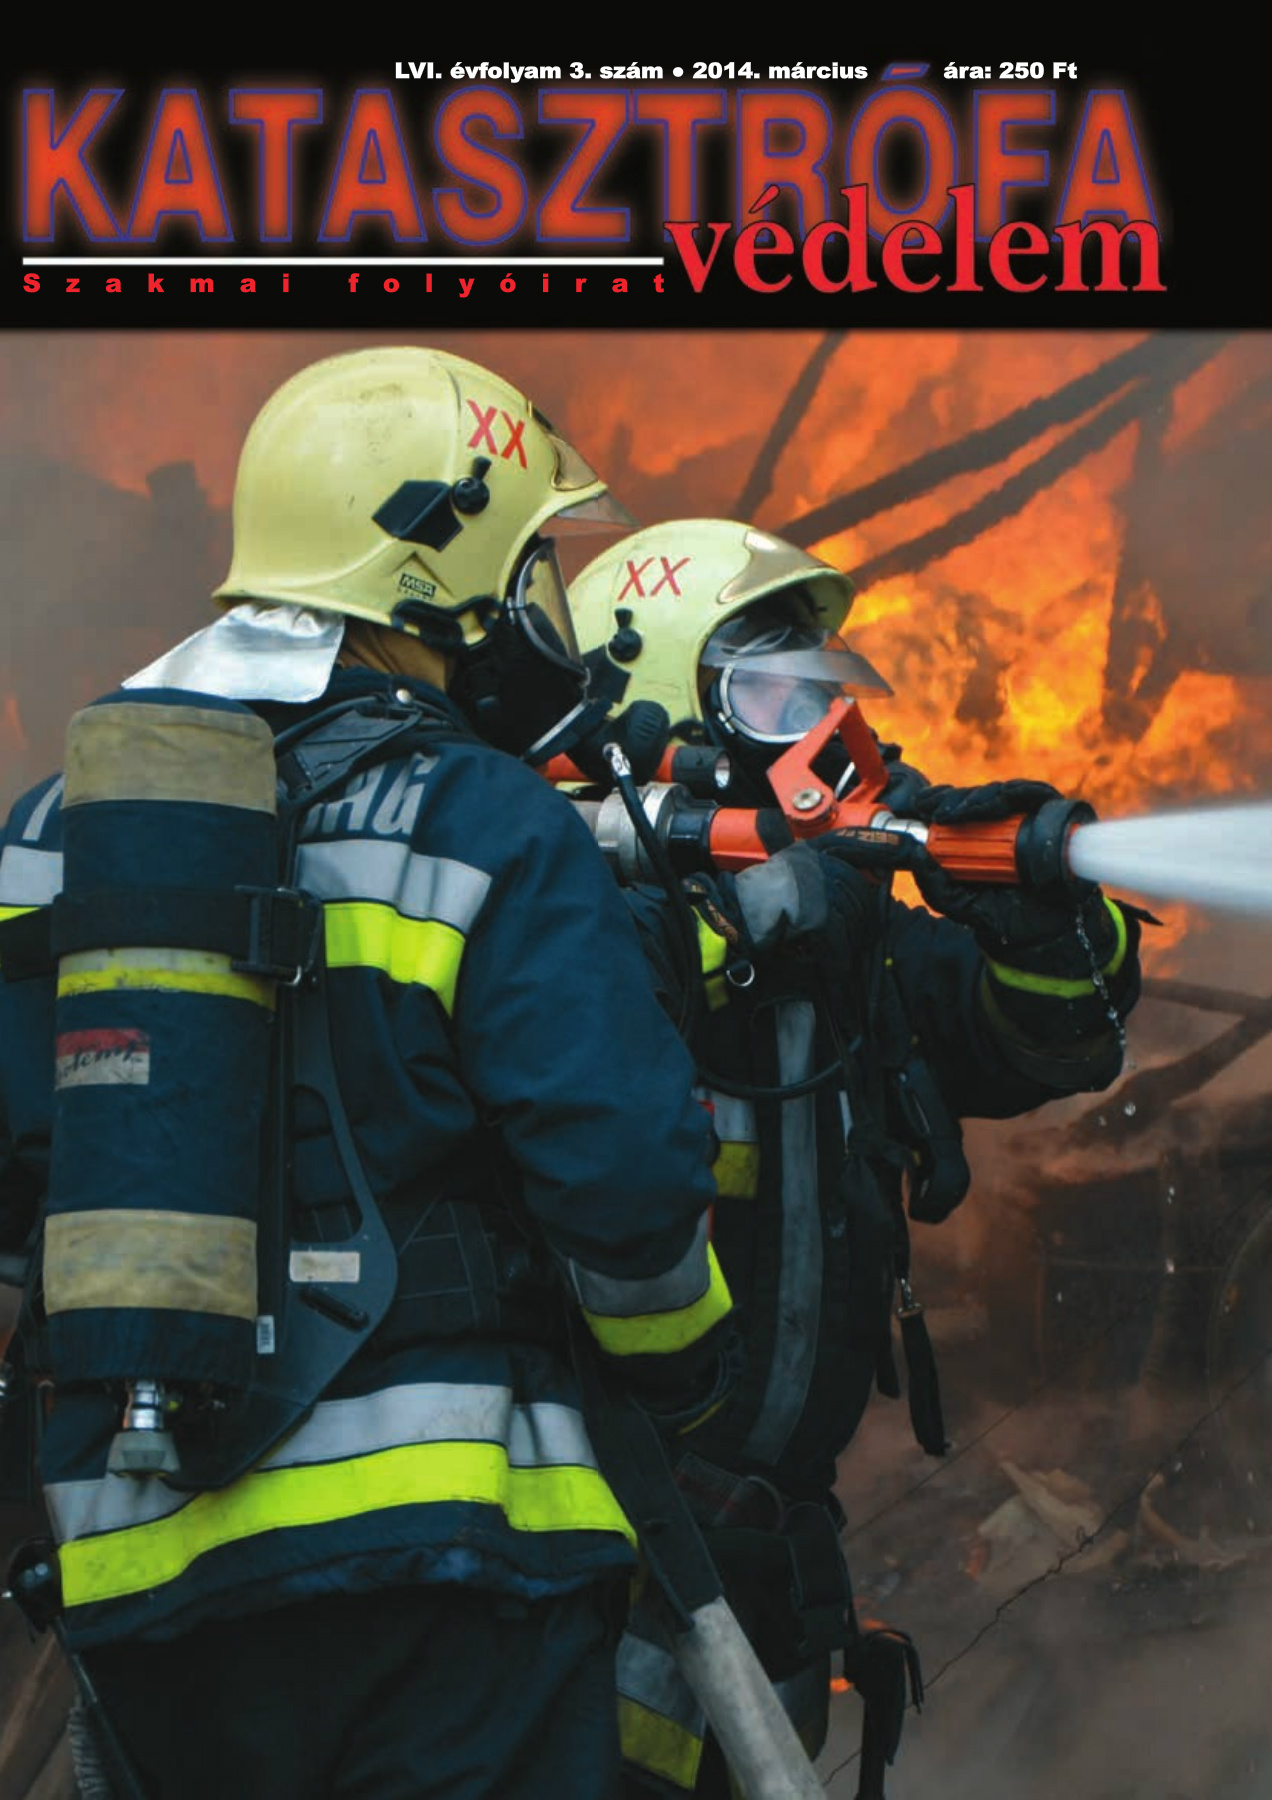 A Katasztrófavédelem magazin LVI. évfolyam 3. szám megtekintése